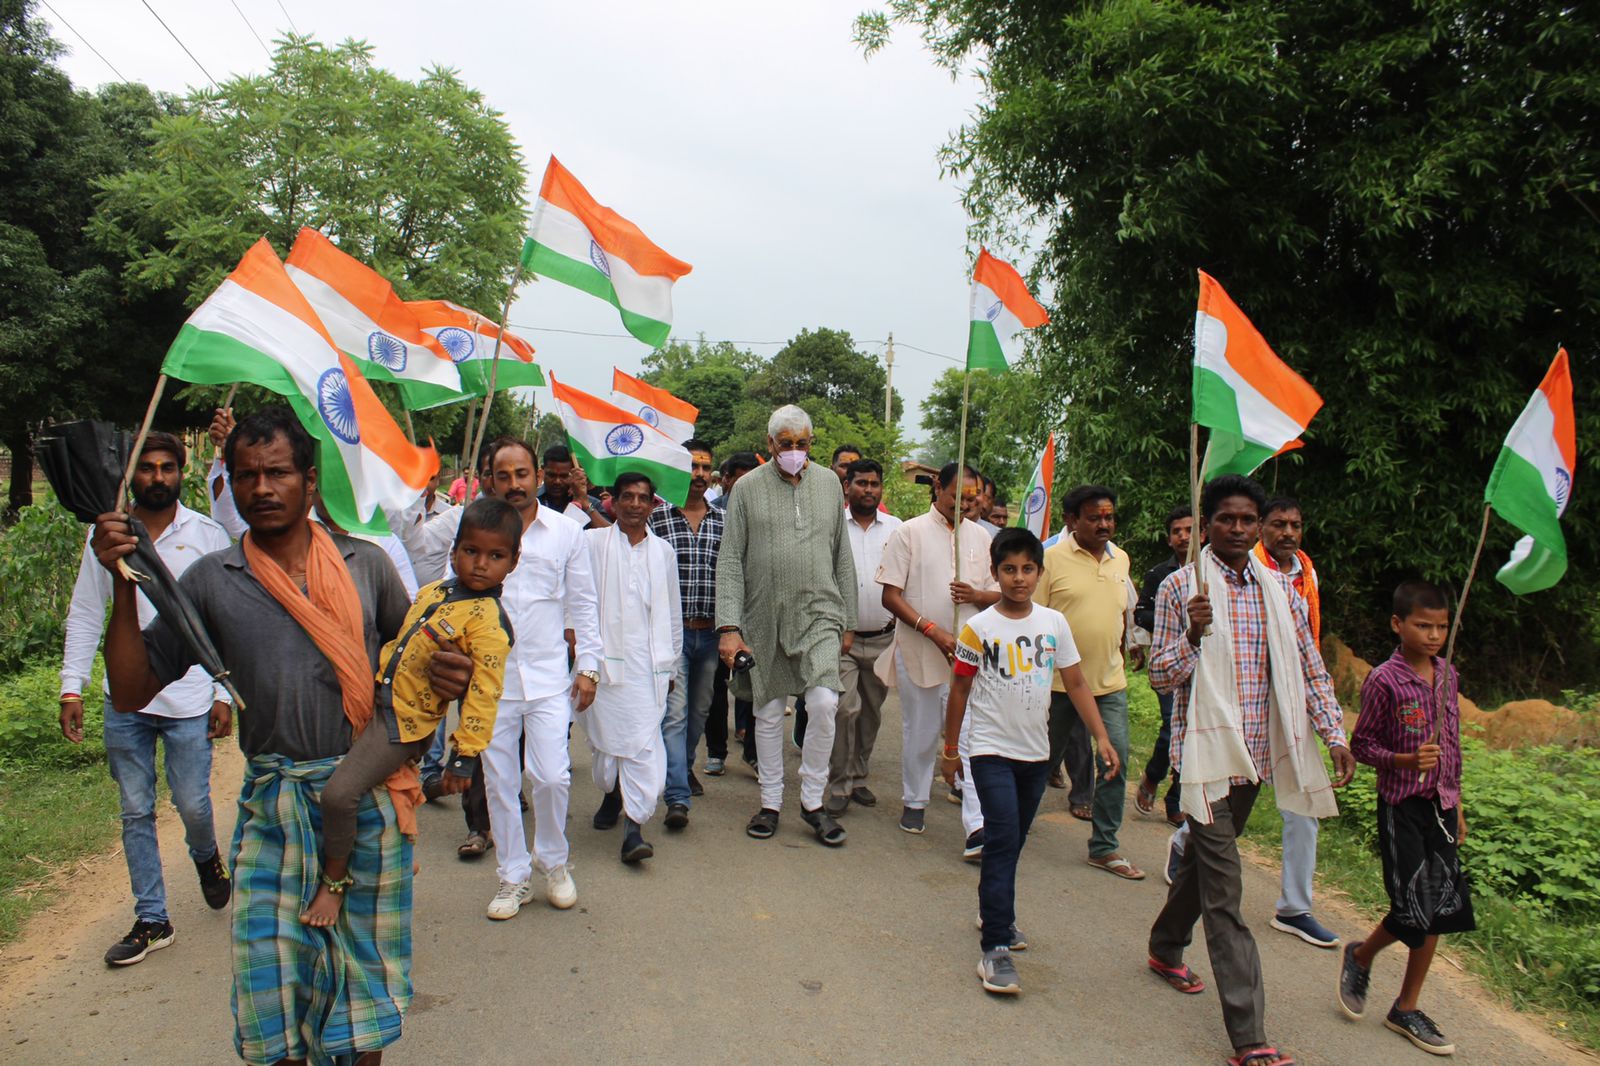 स्वास्थ्य मंत्री सिंहदेव ने उदयपुर से प्रारंभ की आजादी गौरव पदयात्रा